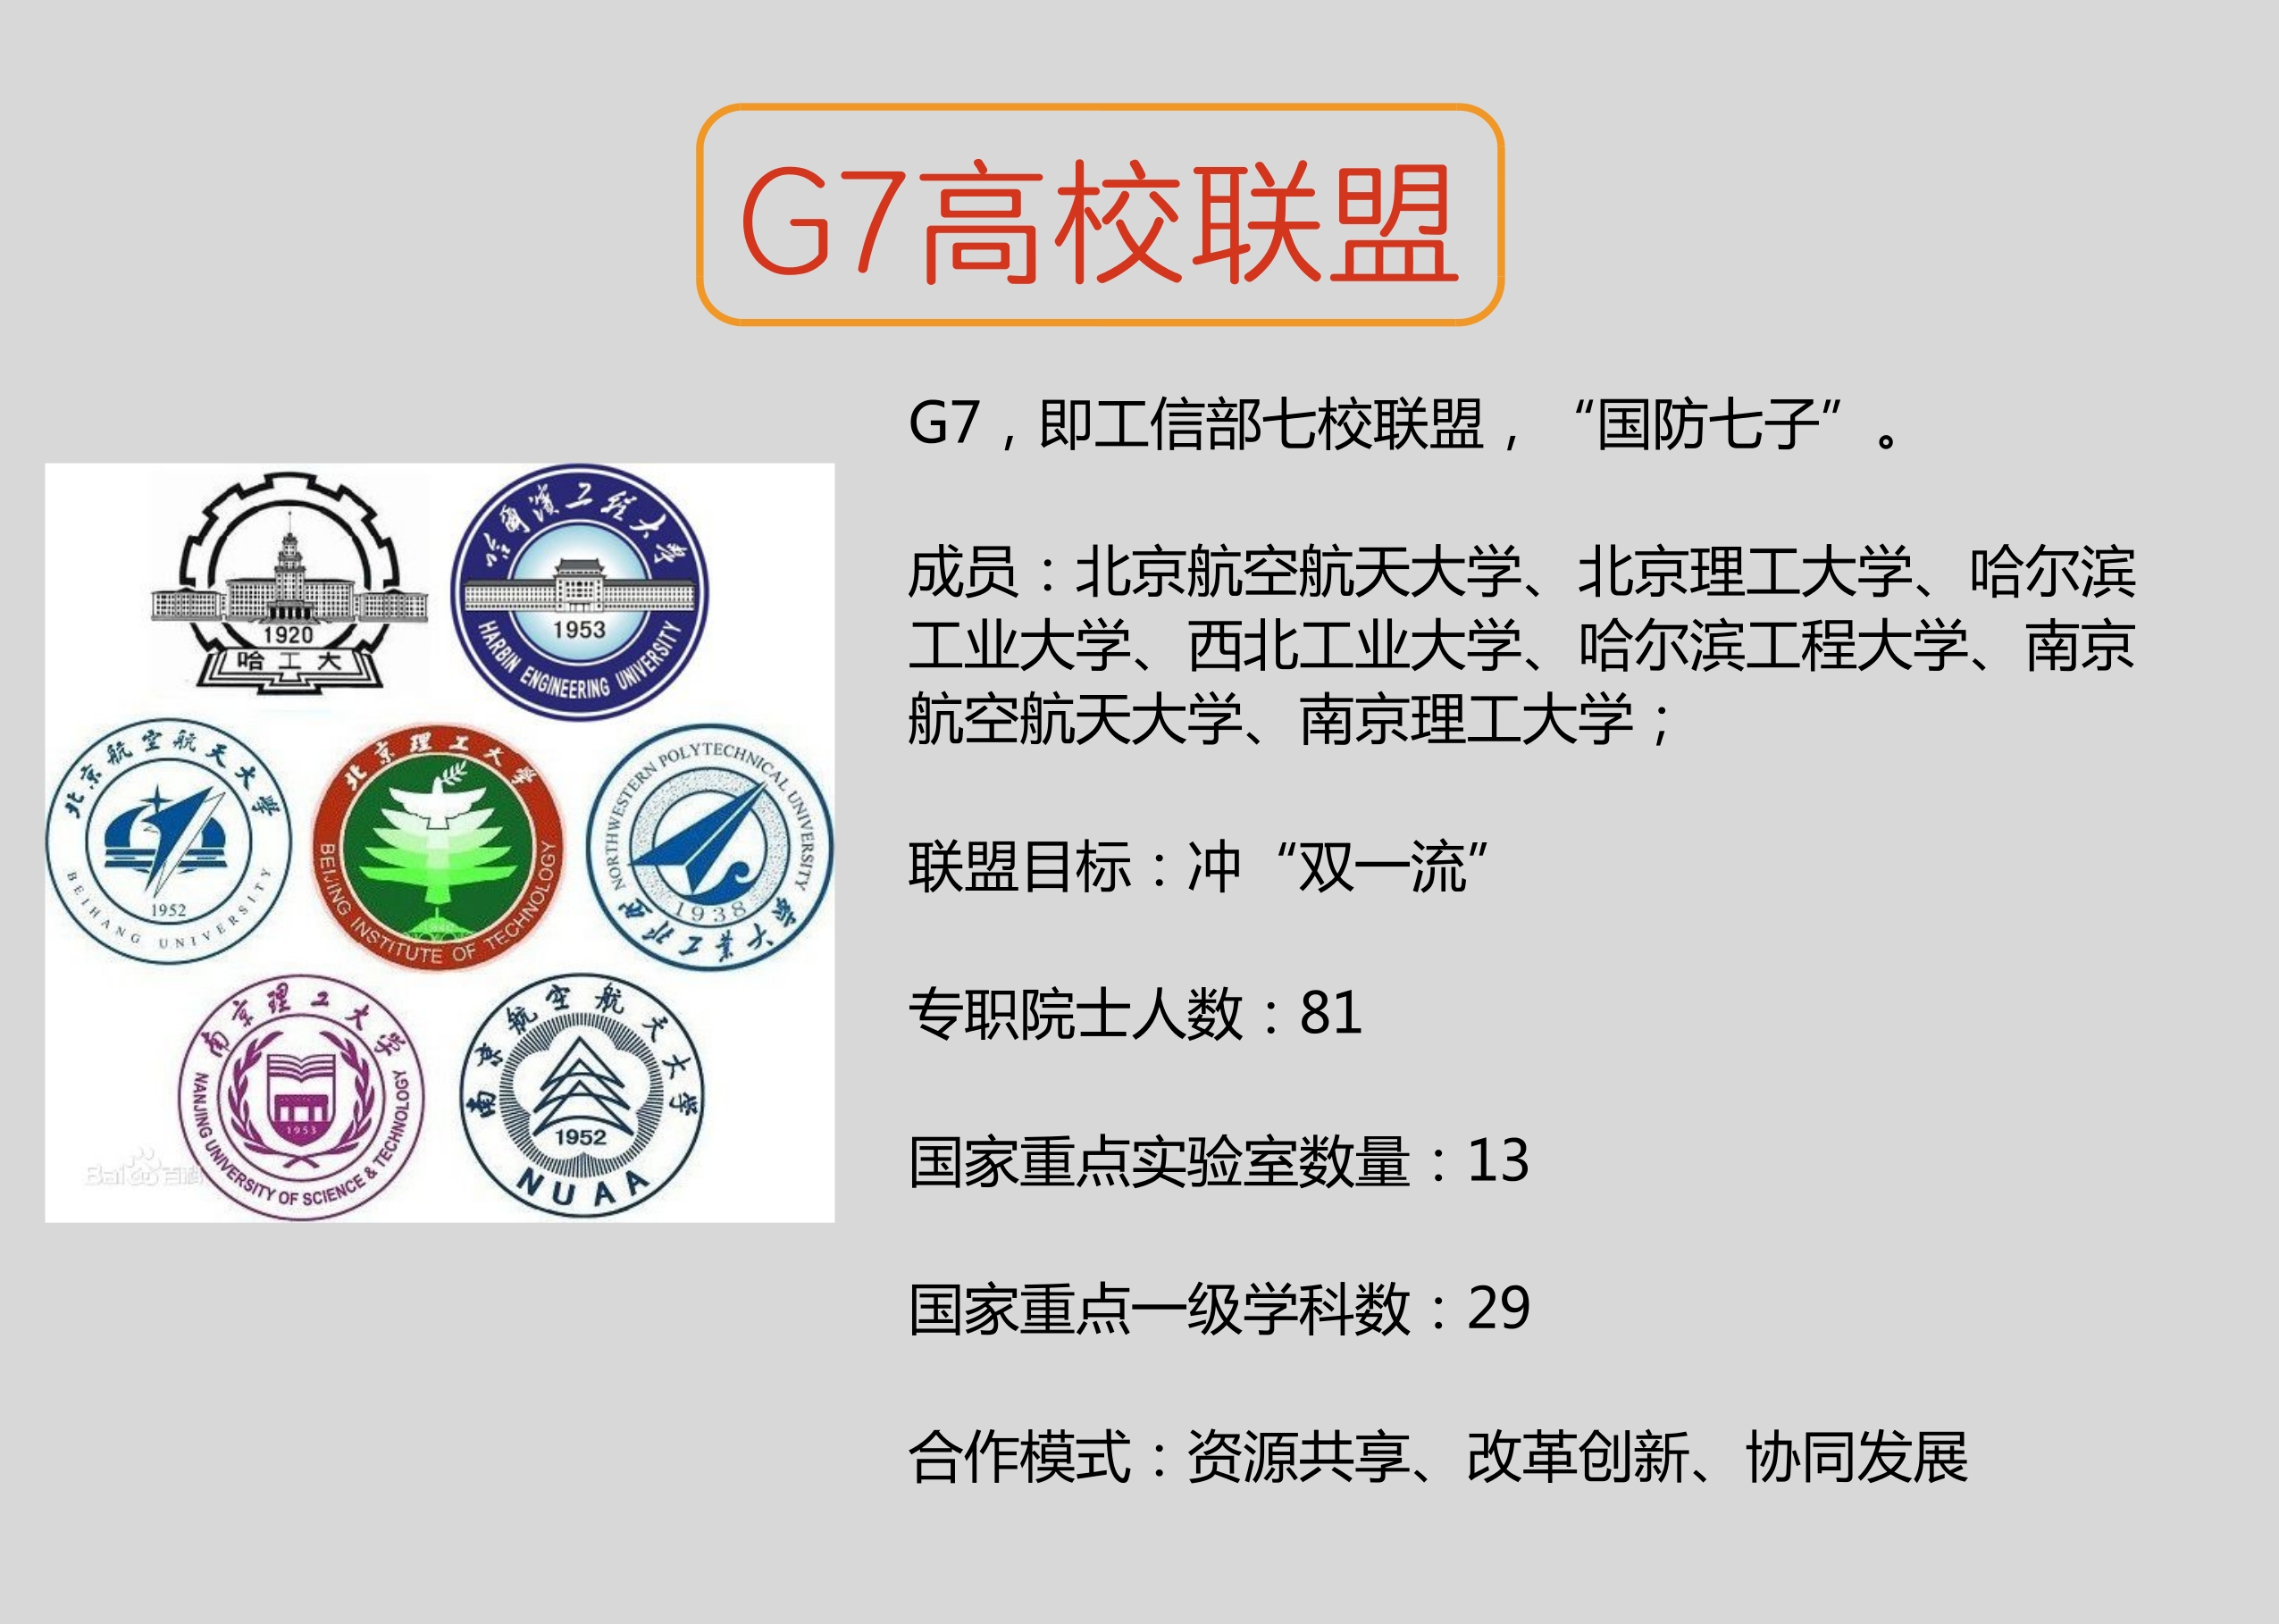 c9,g7,e9:这些大学联盟有哪些成员?有啥优势?